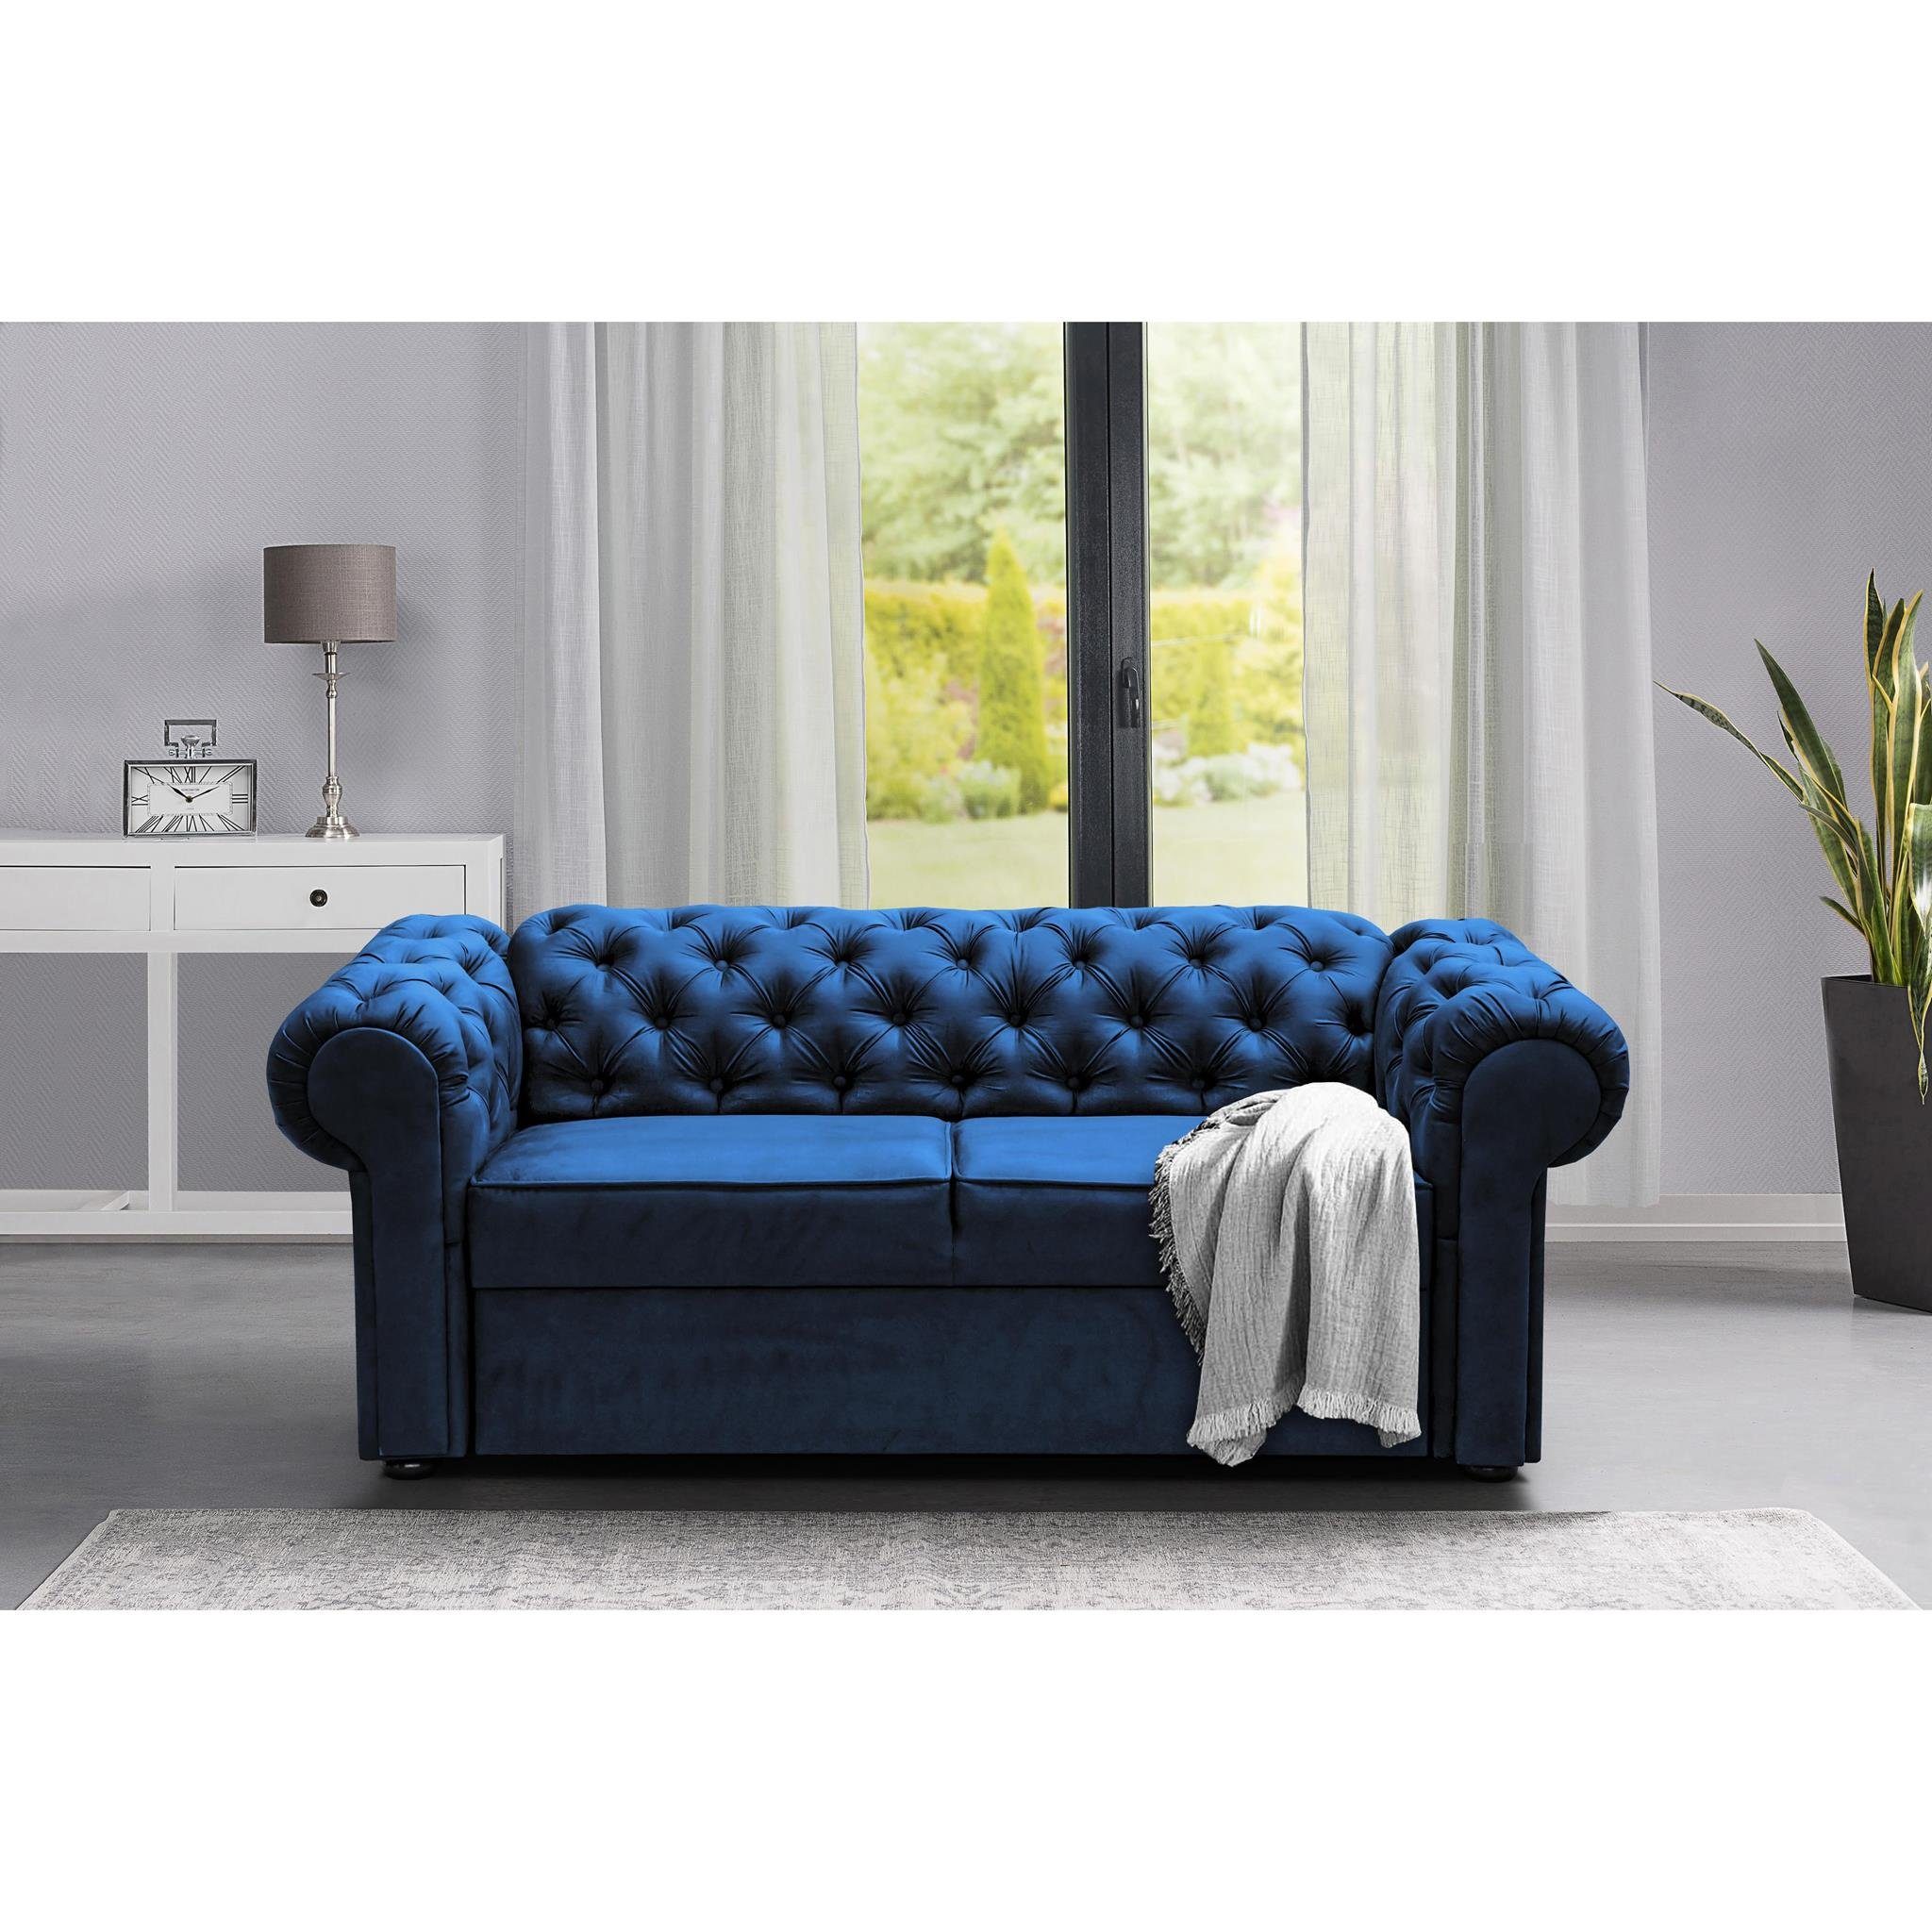 Beautysofa 2-Sitzer Chester, Polstersofa im Chesterfield Stil, Zweisitzer Sofa aus Velours, inklusive Wellenunterfederung Marineblau (kronos 09)